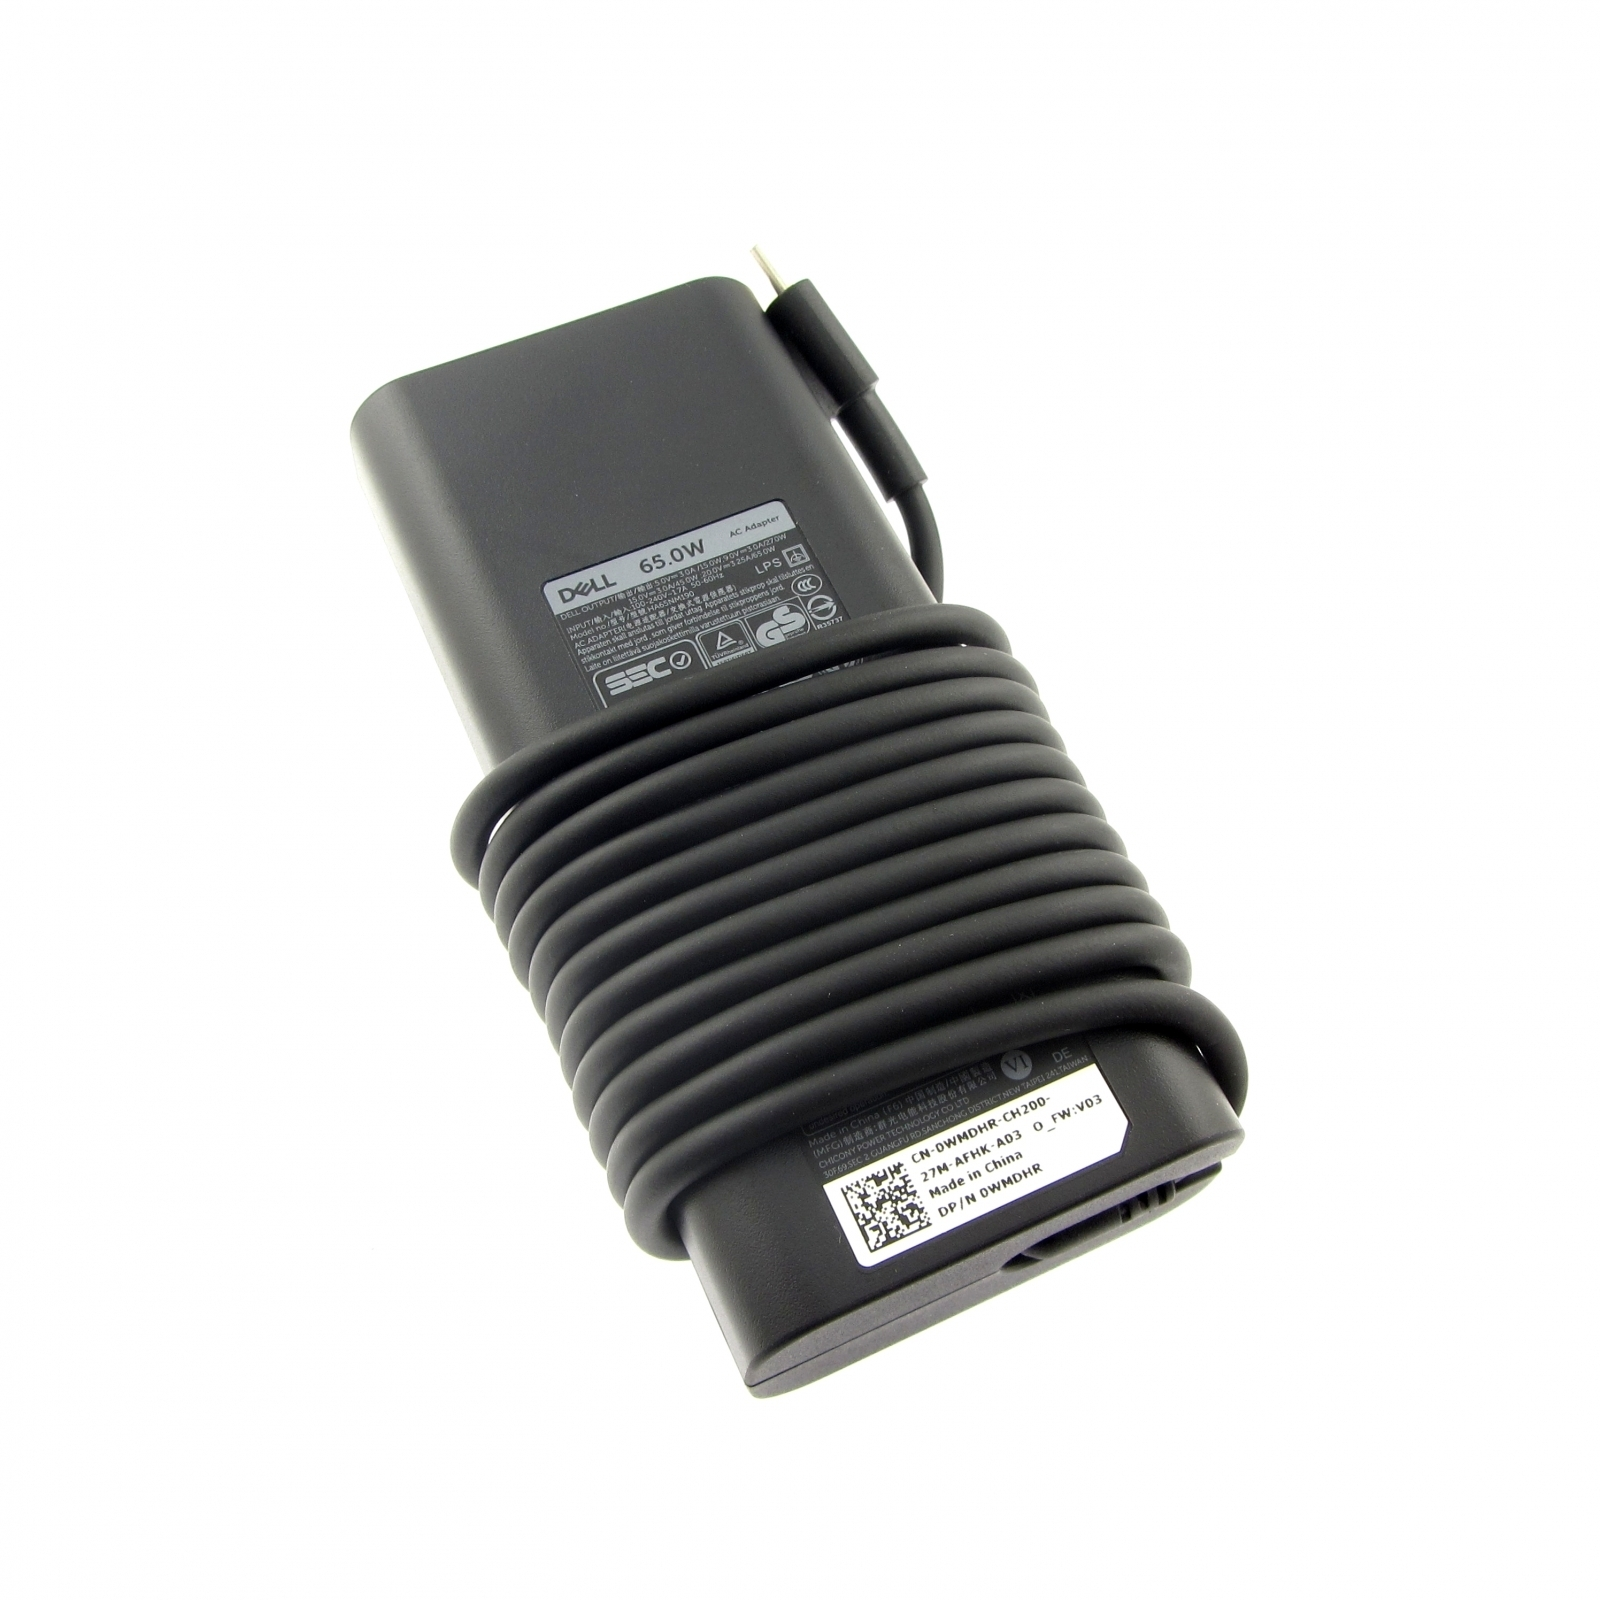 DELL Latitude 15 Watt, 65 USB-C USB-C Watt Netzteil Notebook-Netzteil (7520) Stecker 65 original